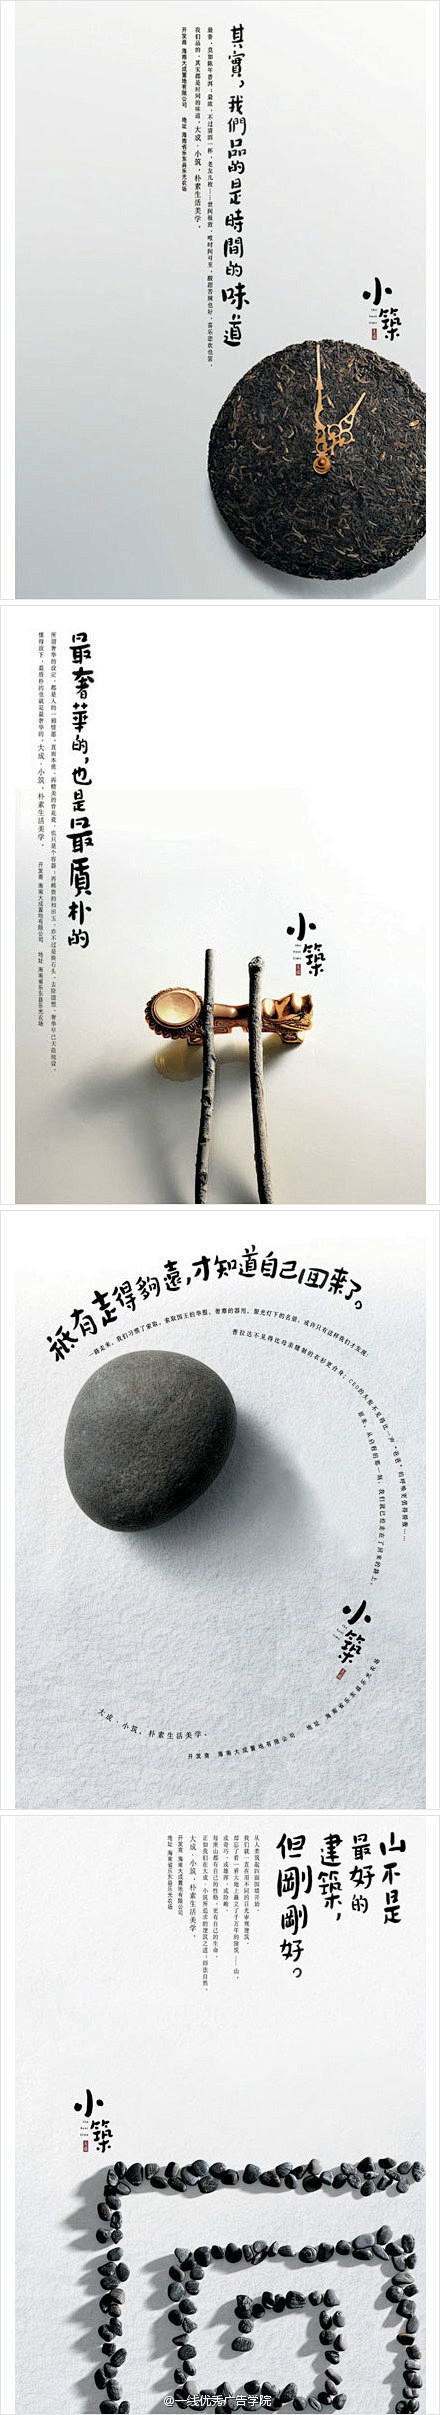 #2012广州日报华文报纸广告奖，后续获...